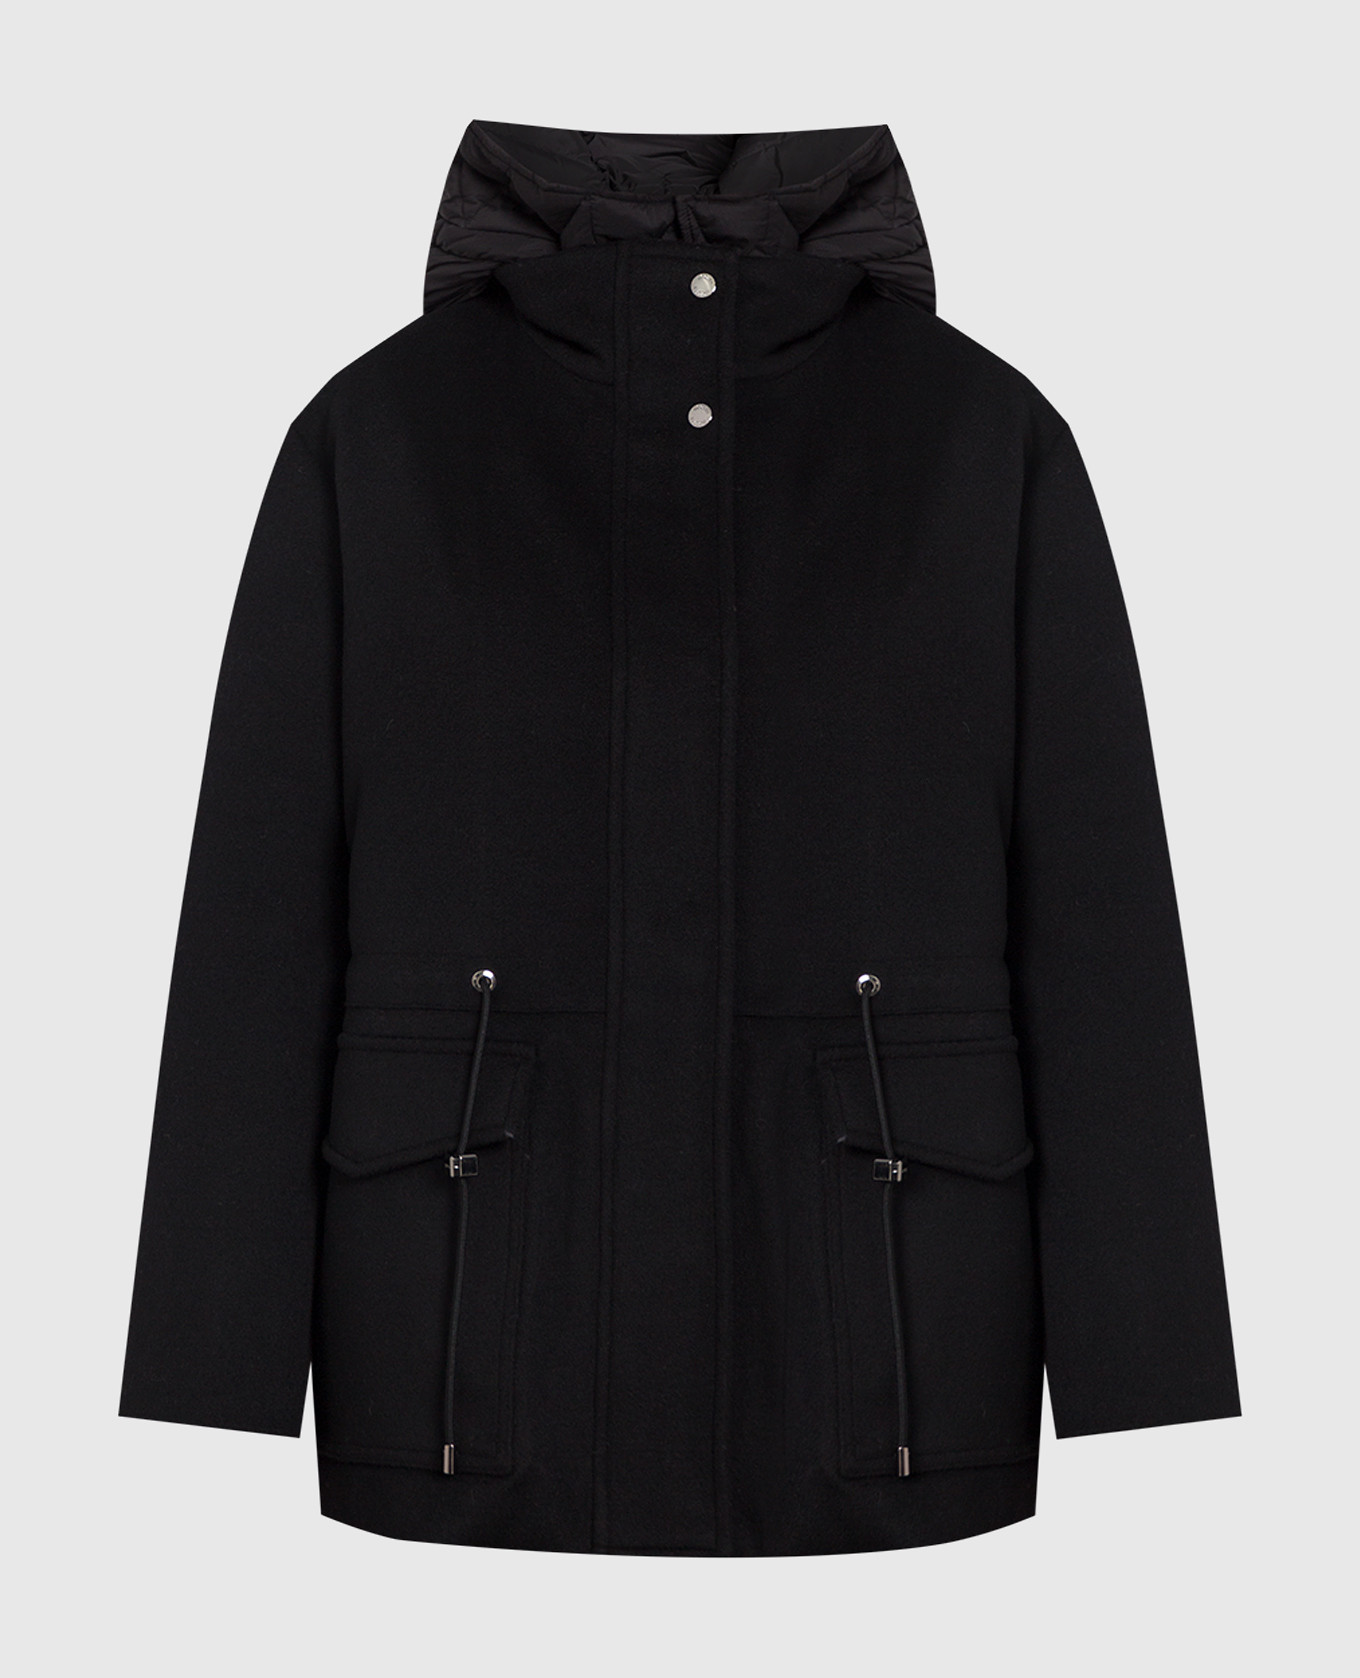 Черный комплект Zermatt-le из пальто и куртки